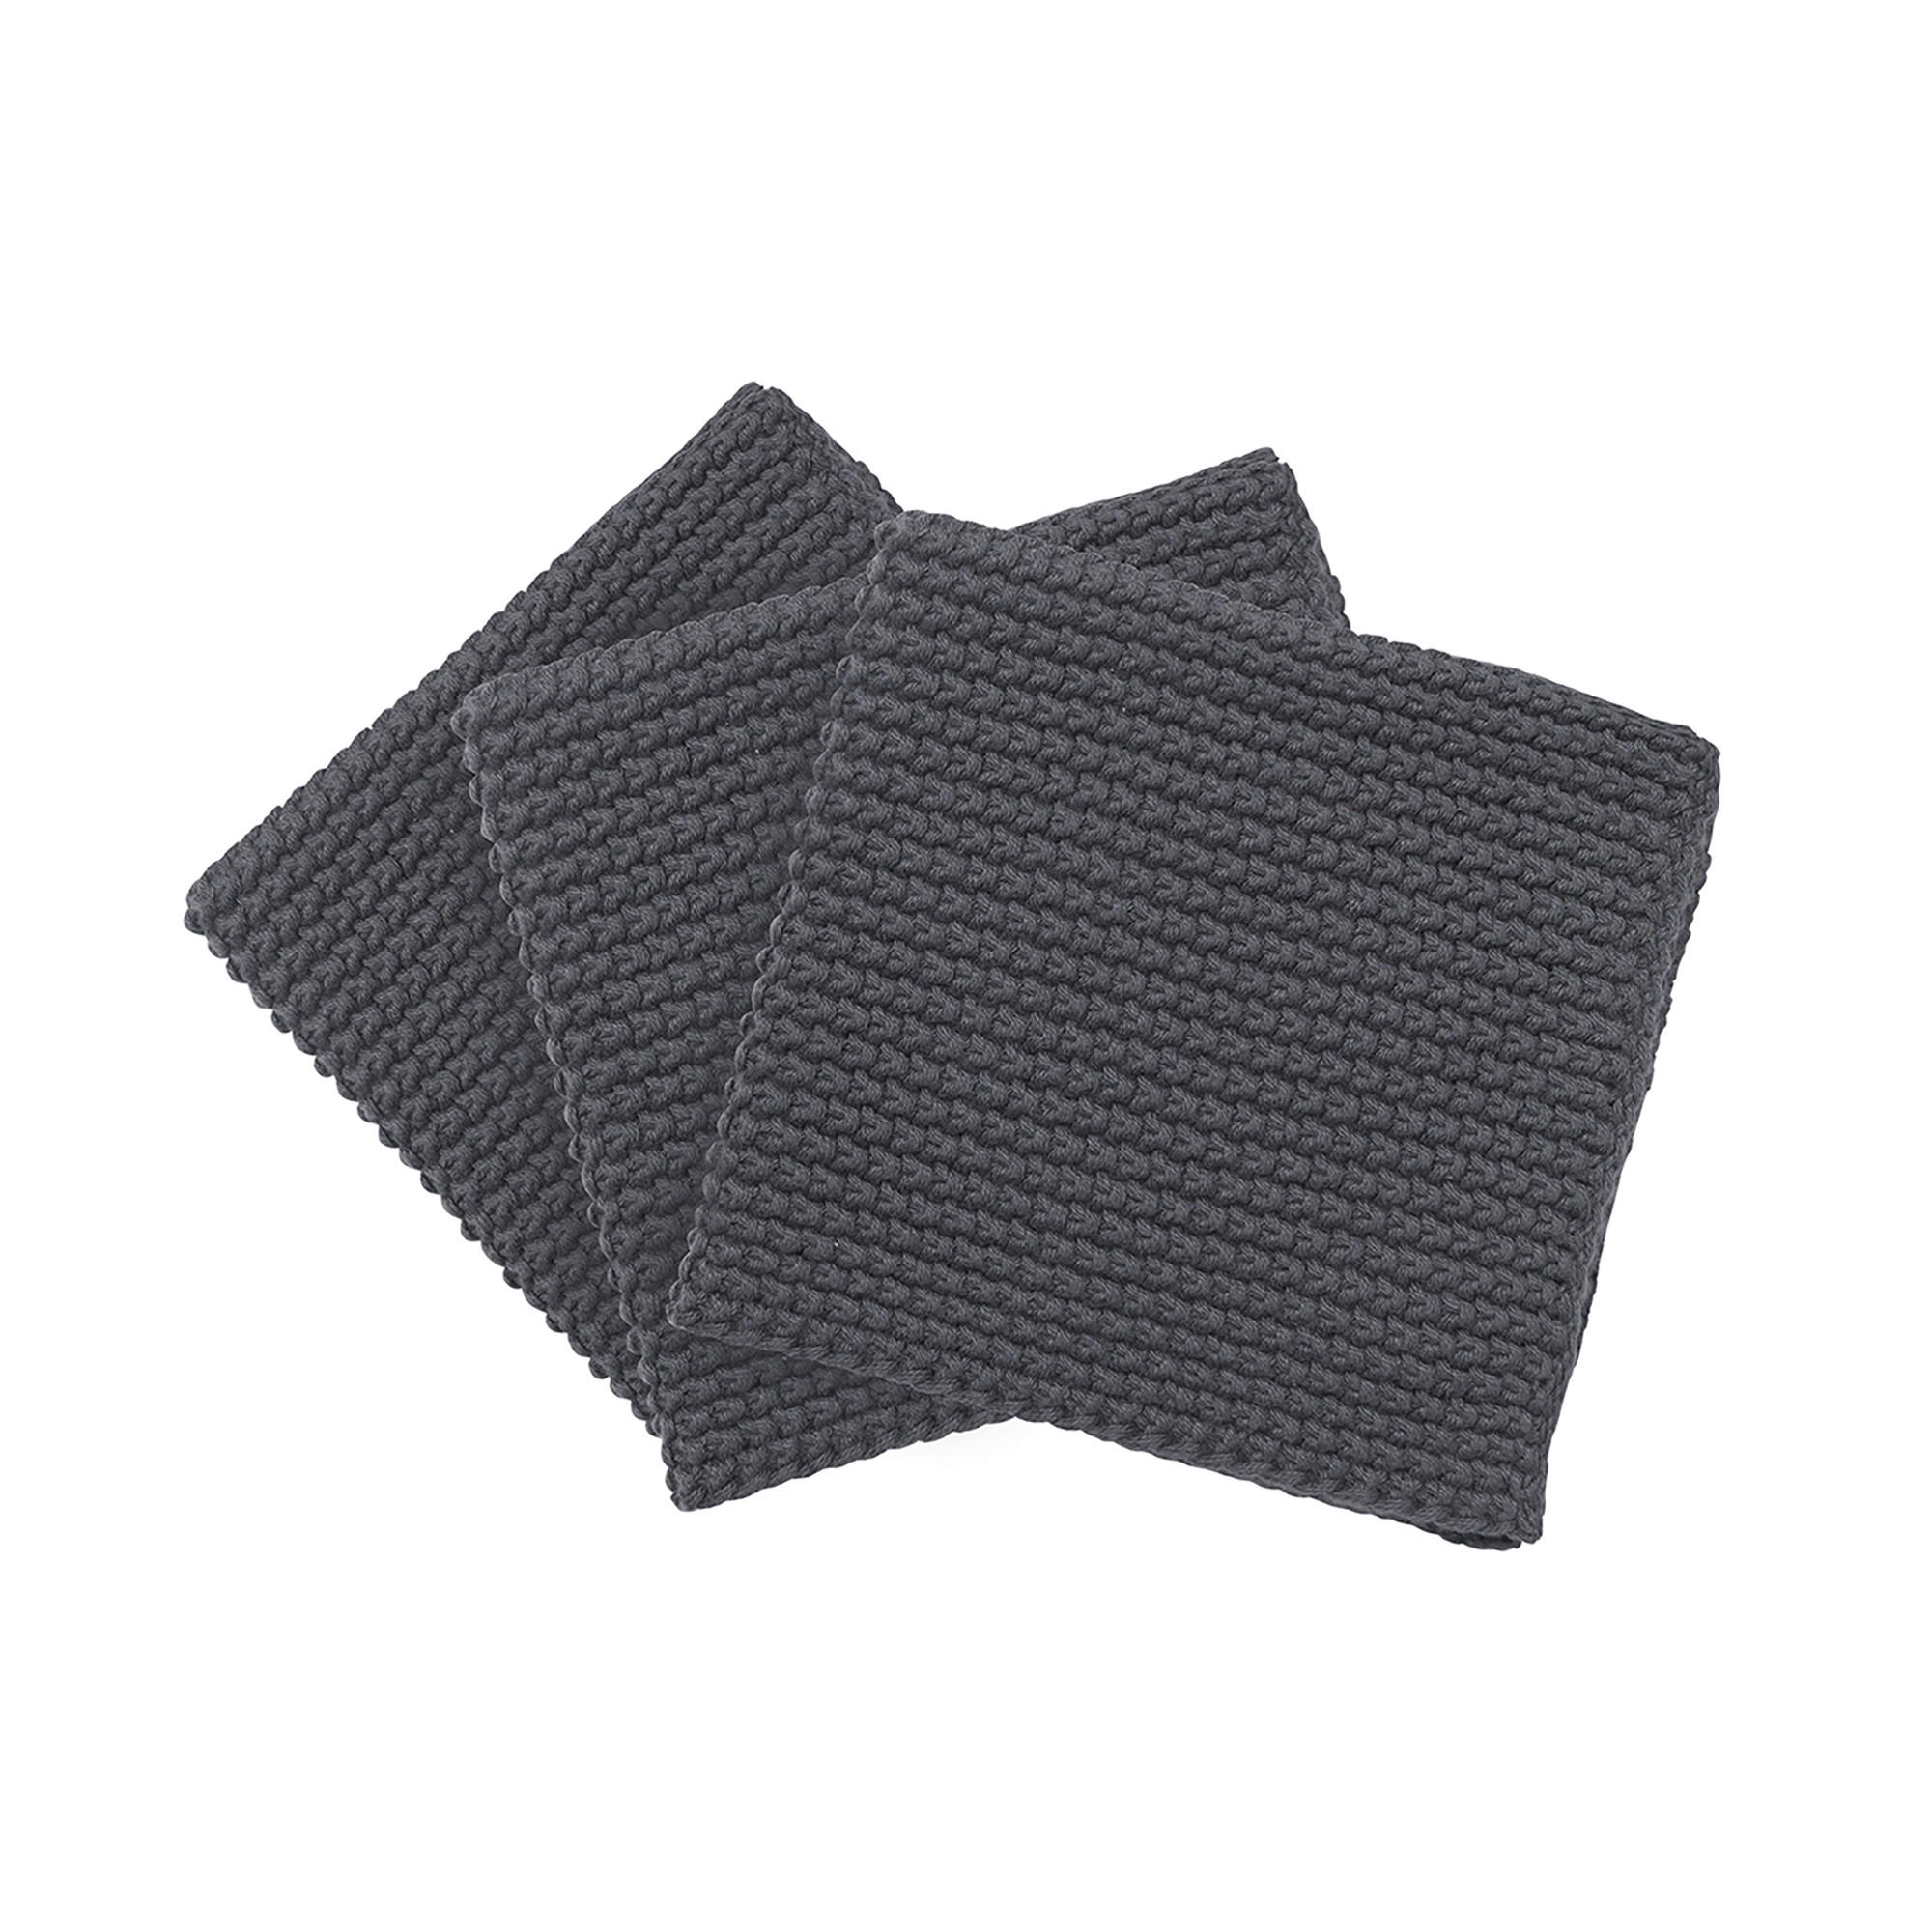 GESCHIRRTUCH-SET  3-teilig  - Grau, Basics, Textil (25/25cm) - Blomus